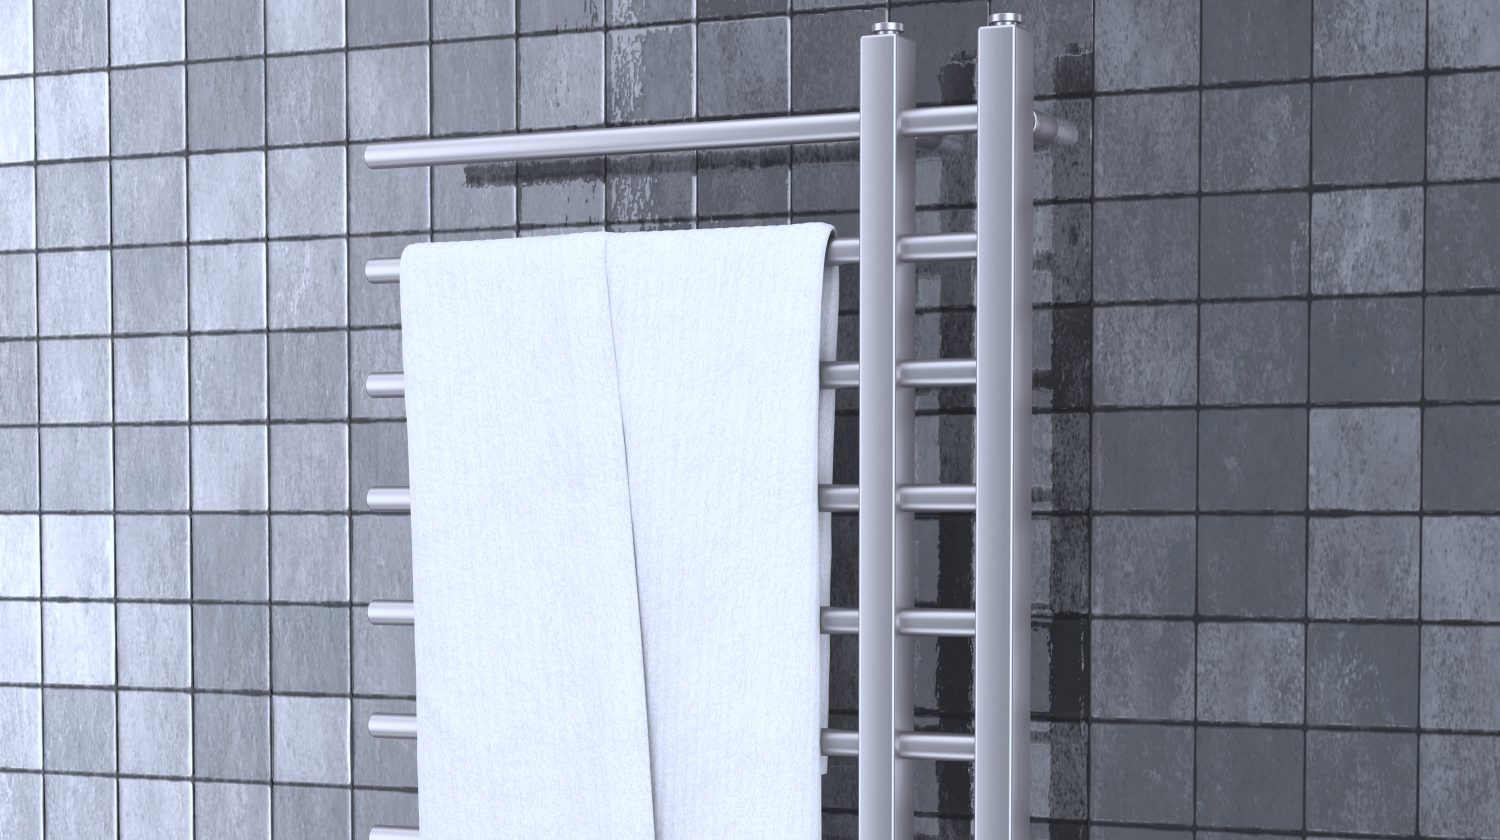 https://robemart.com/blog/wp-content/webpc-passthru.php?src=https://robemart.com/blog/wp-content/uploads/2019/08/bathroom-towel-heater-warmer-rail-front-towel-warmer-ss-Featured.jpg&nocache=1